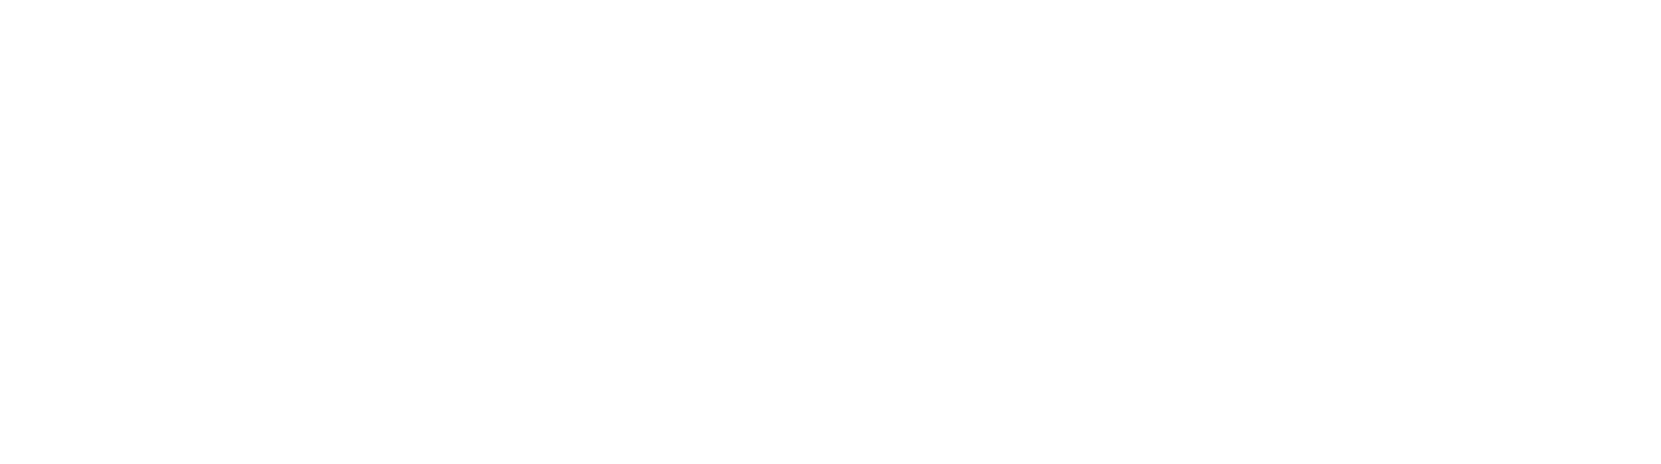 property management master logo